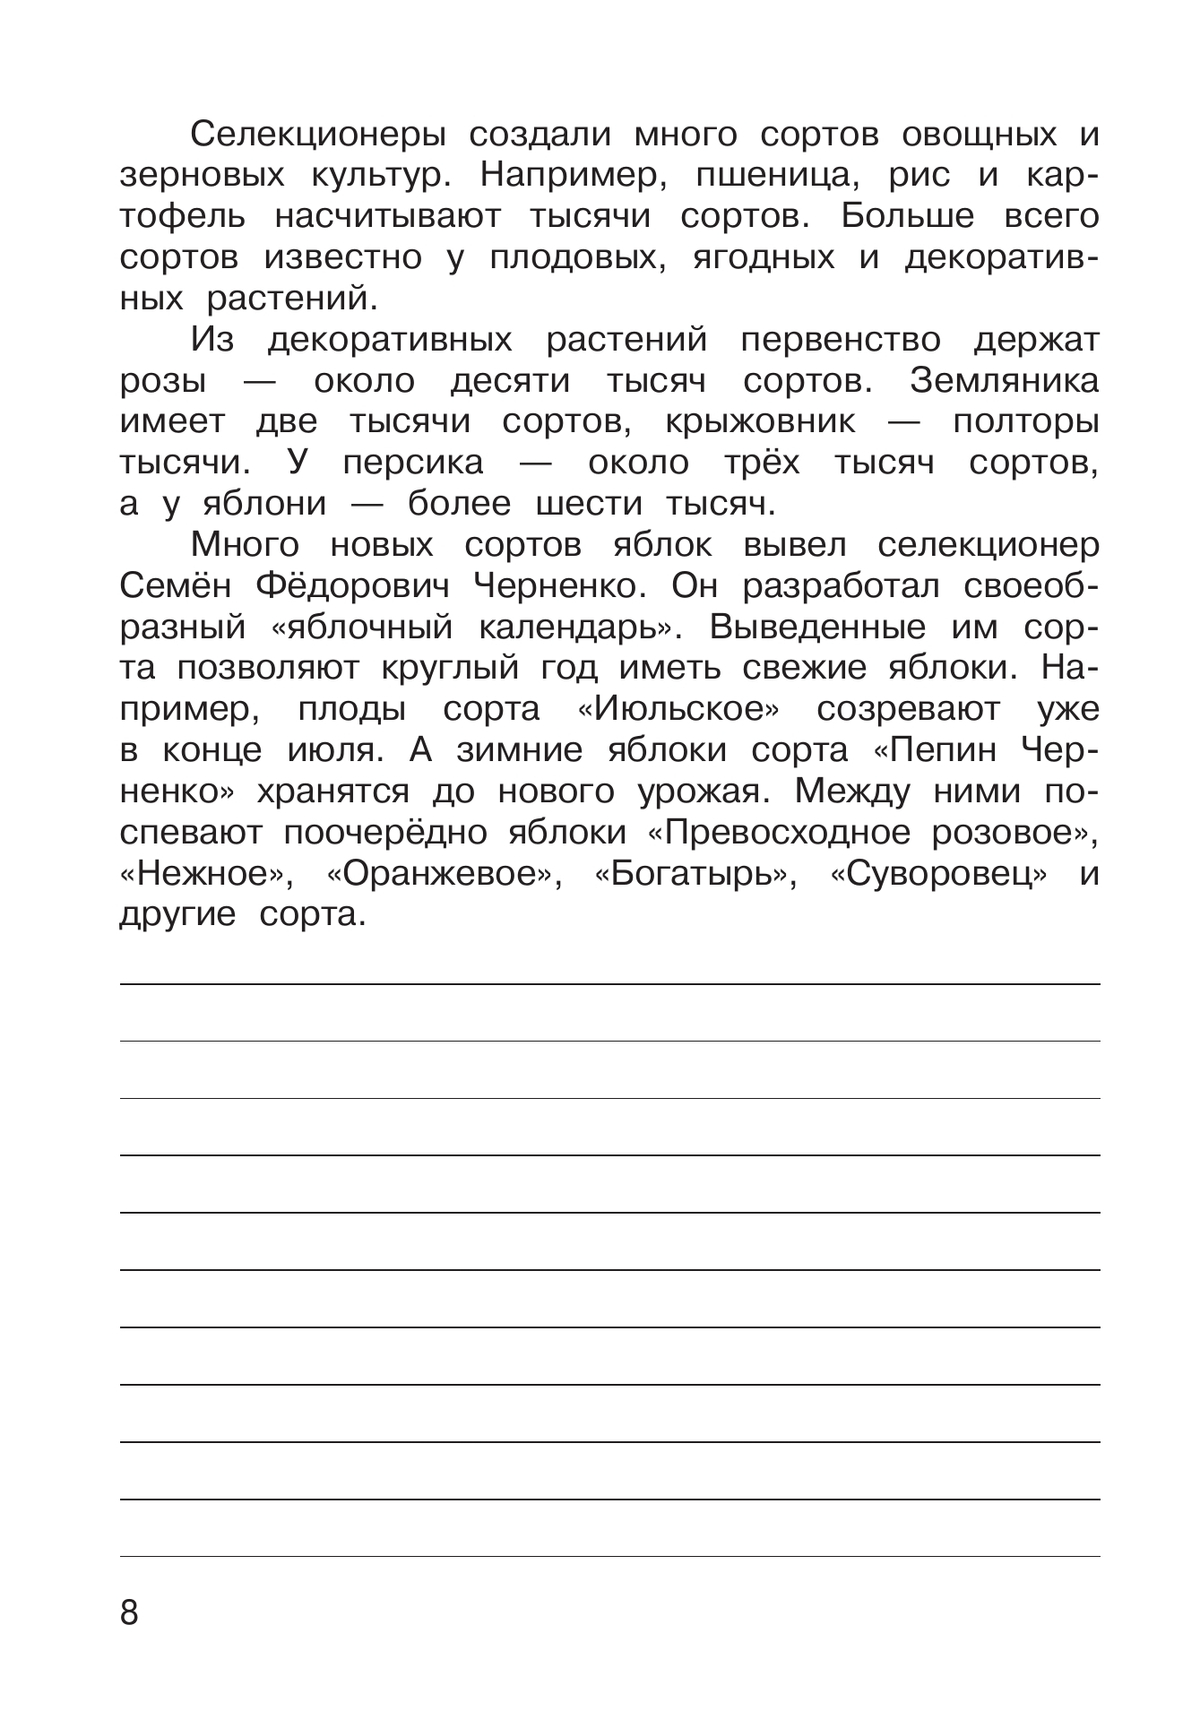 Русский язык. 3 класс. В 2 частях. Часть 2. Рабочая тетрадь к учебному пособию 9